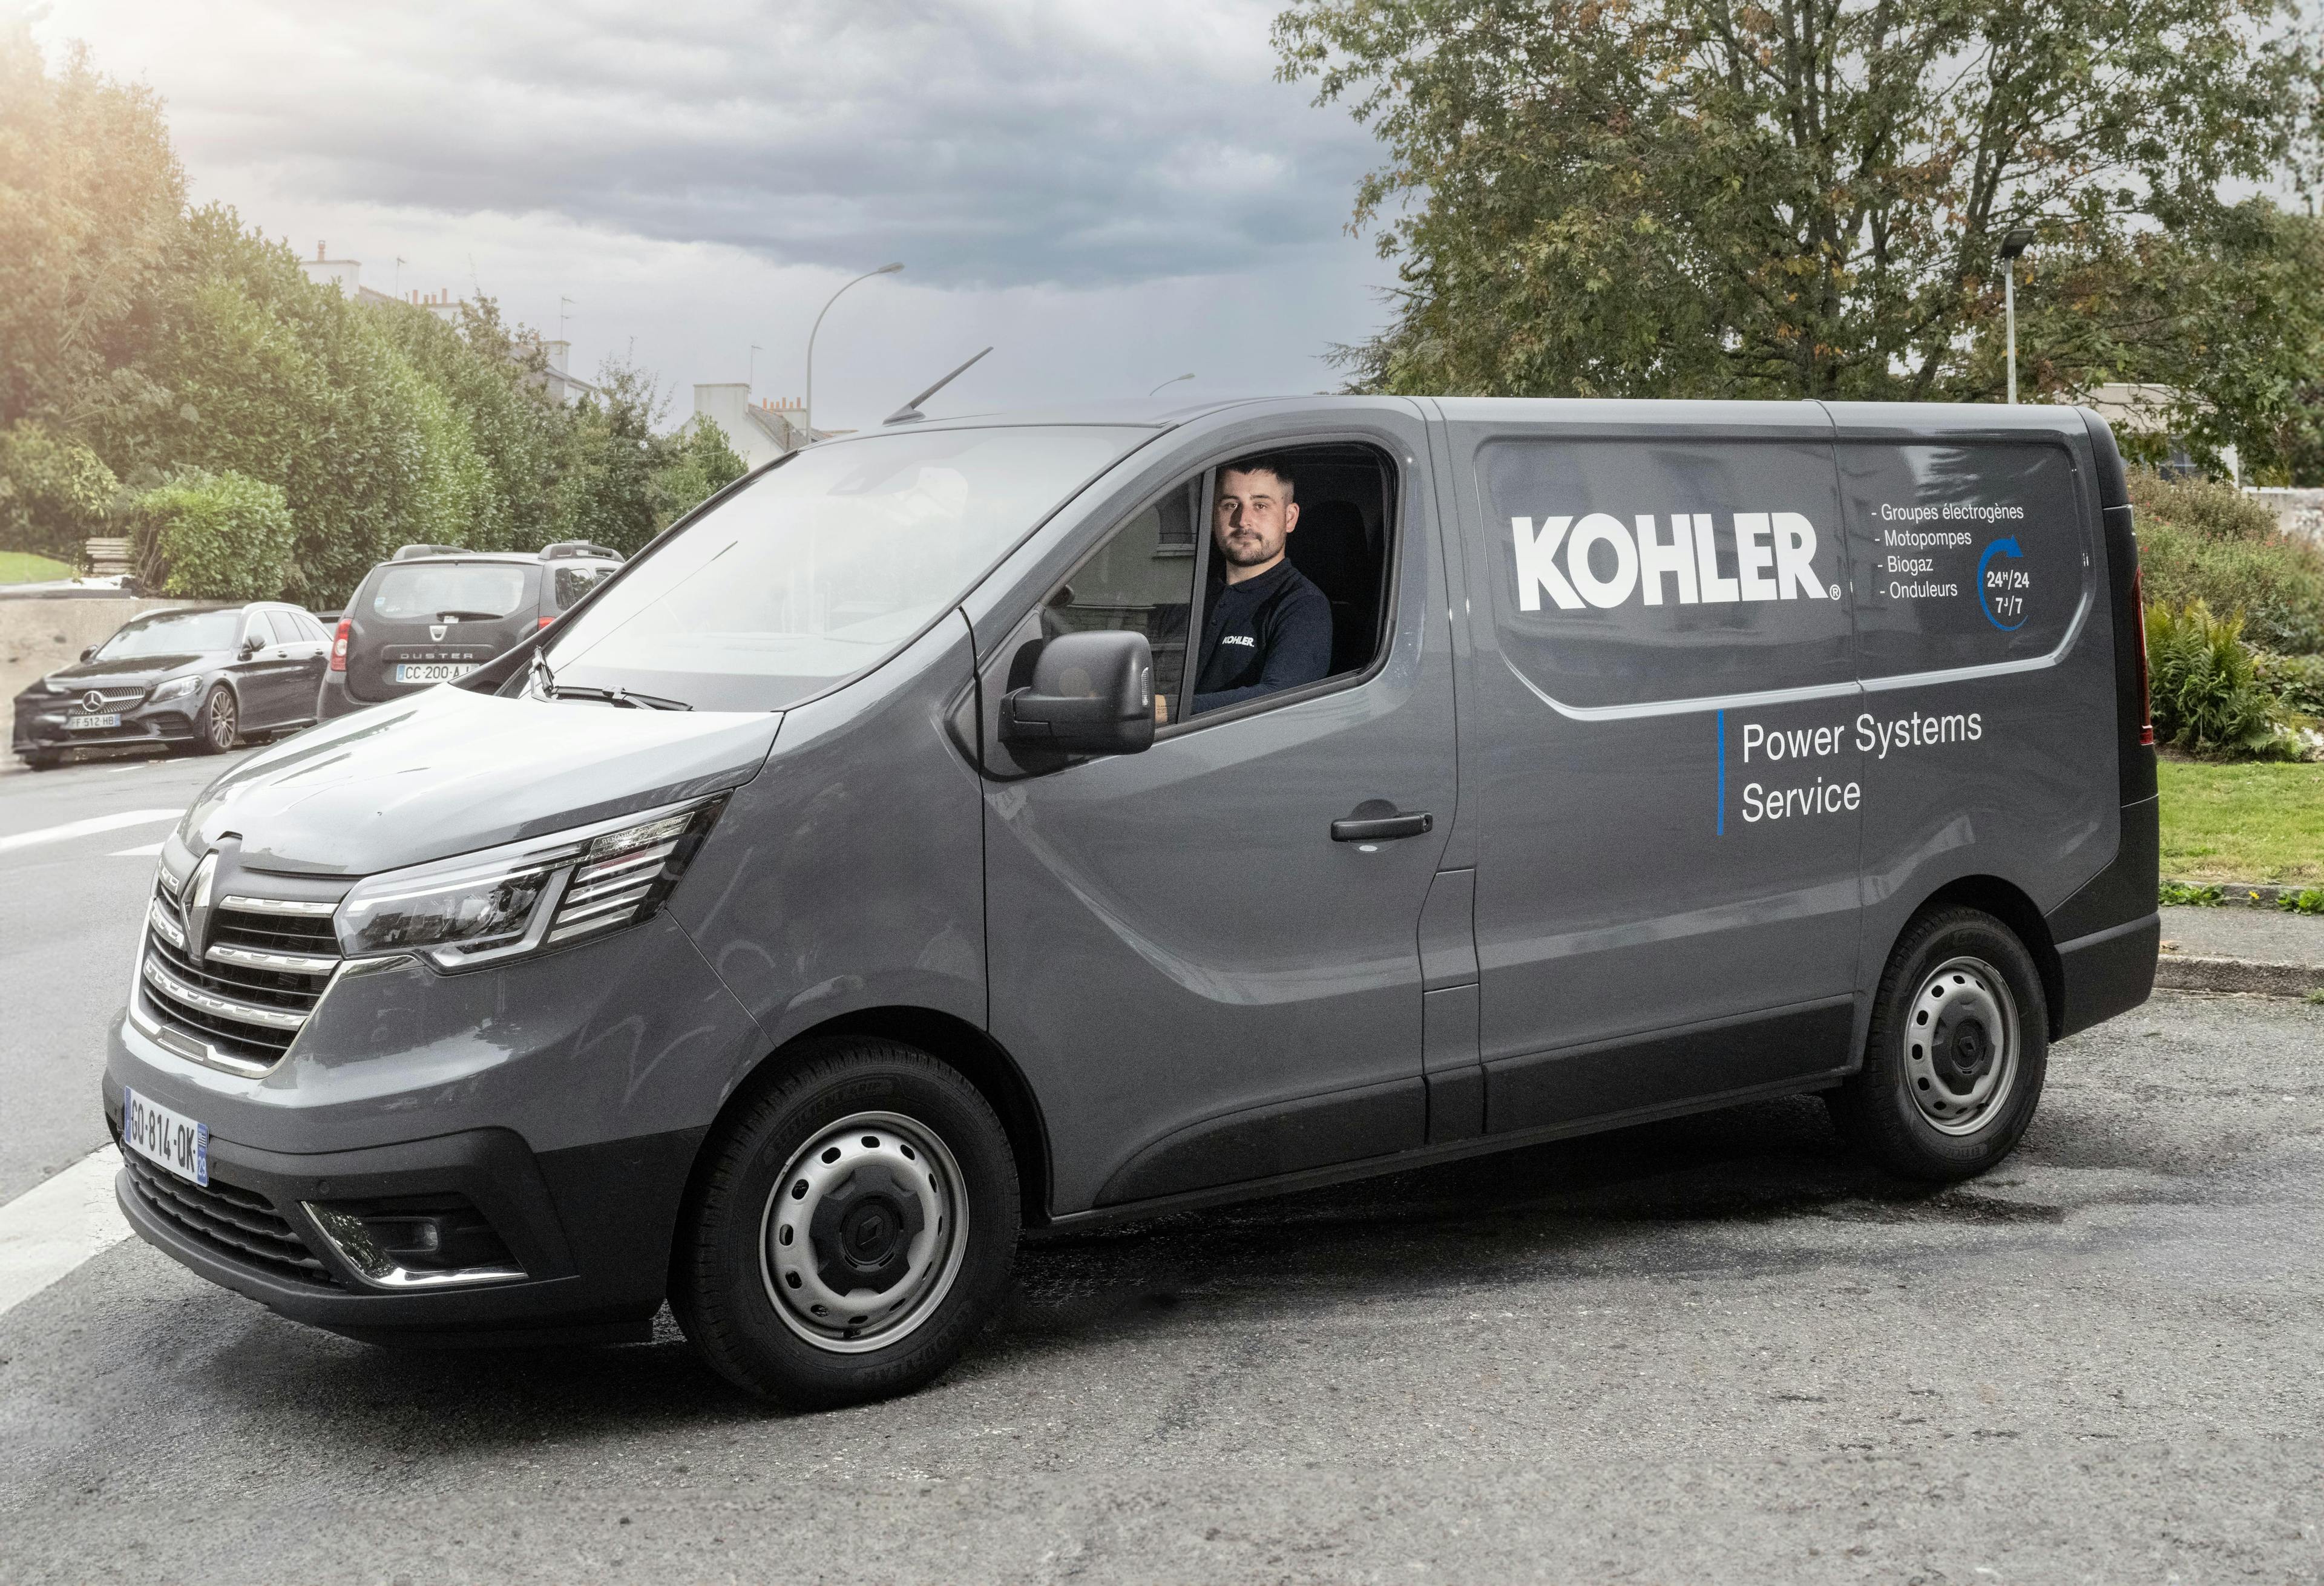 Véhicule d'intervention de Kohler service : assistance, dépannage, rénovation